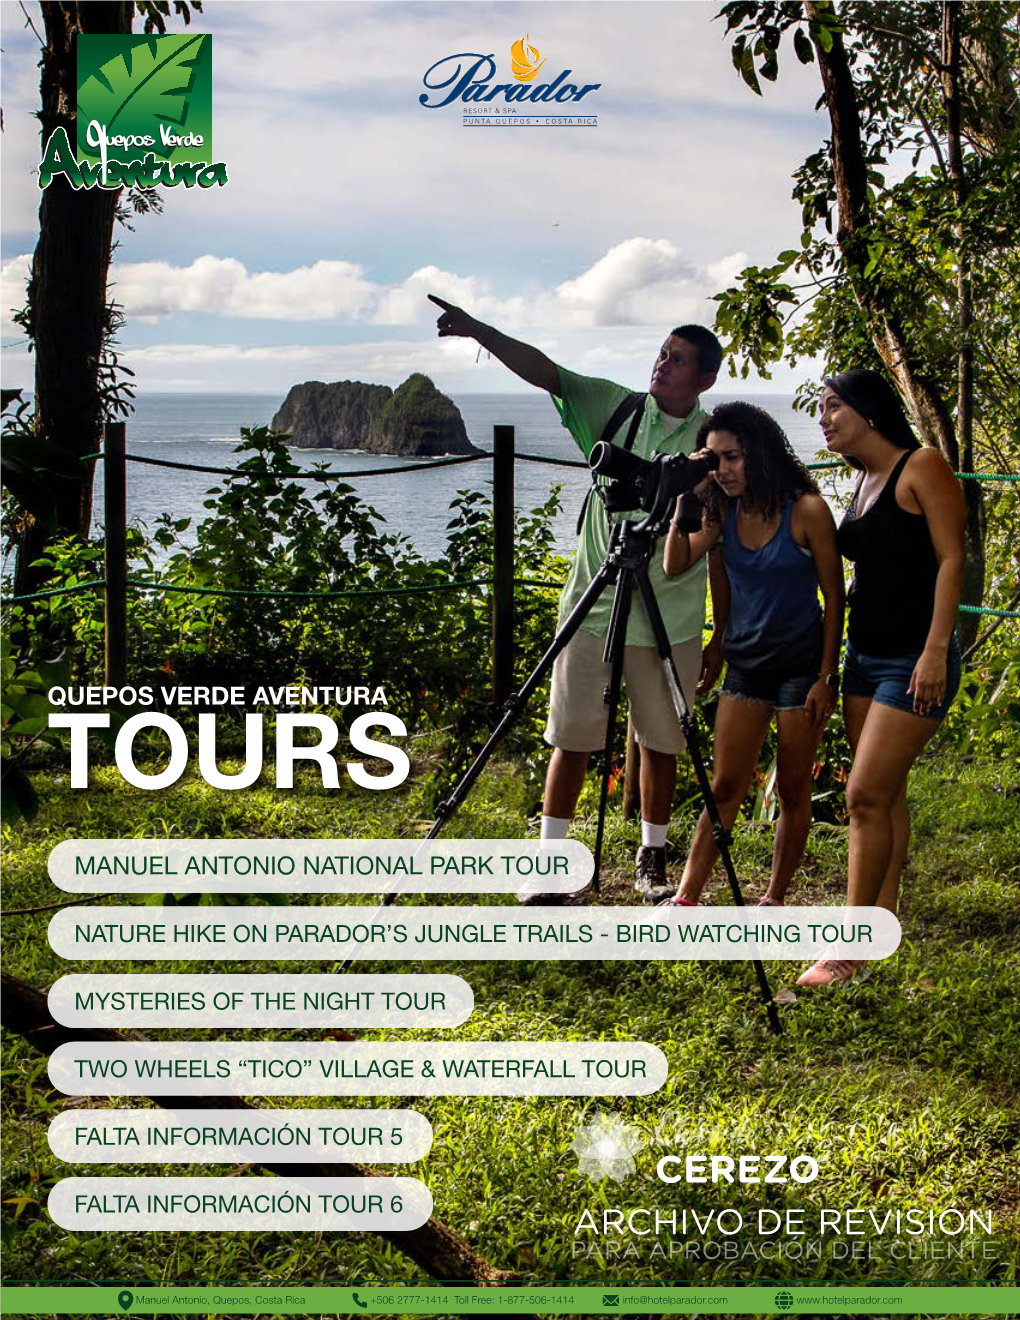 Tours Parador Quepos Verde Aventura REVISION